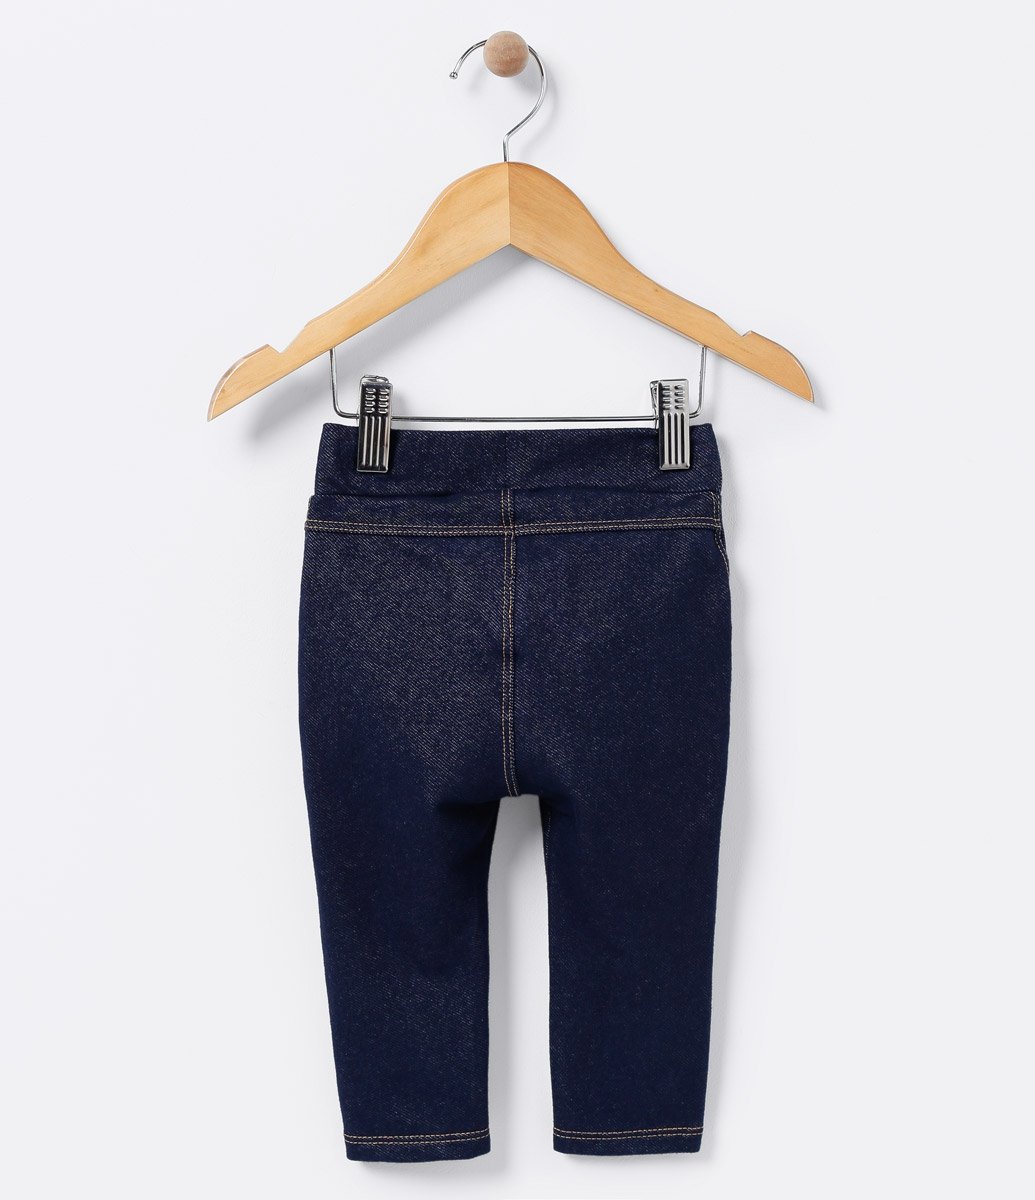 Calça Legging Infantil Imitando Jeans - Tam 0 a 18 meses Azul Marinho